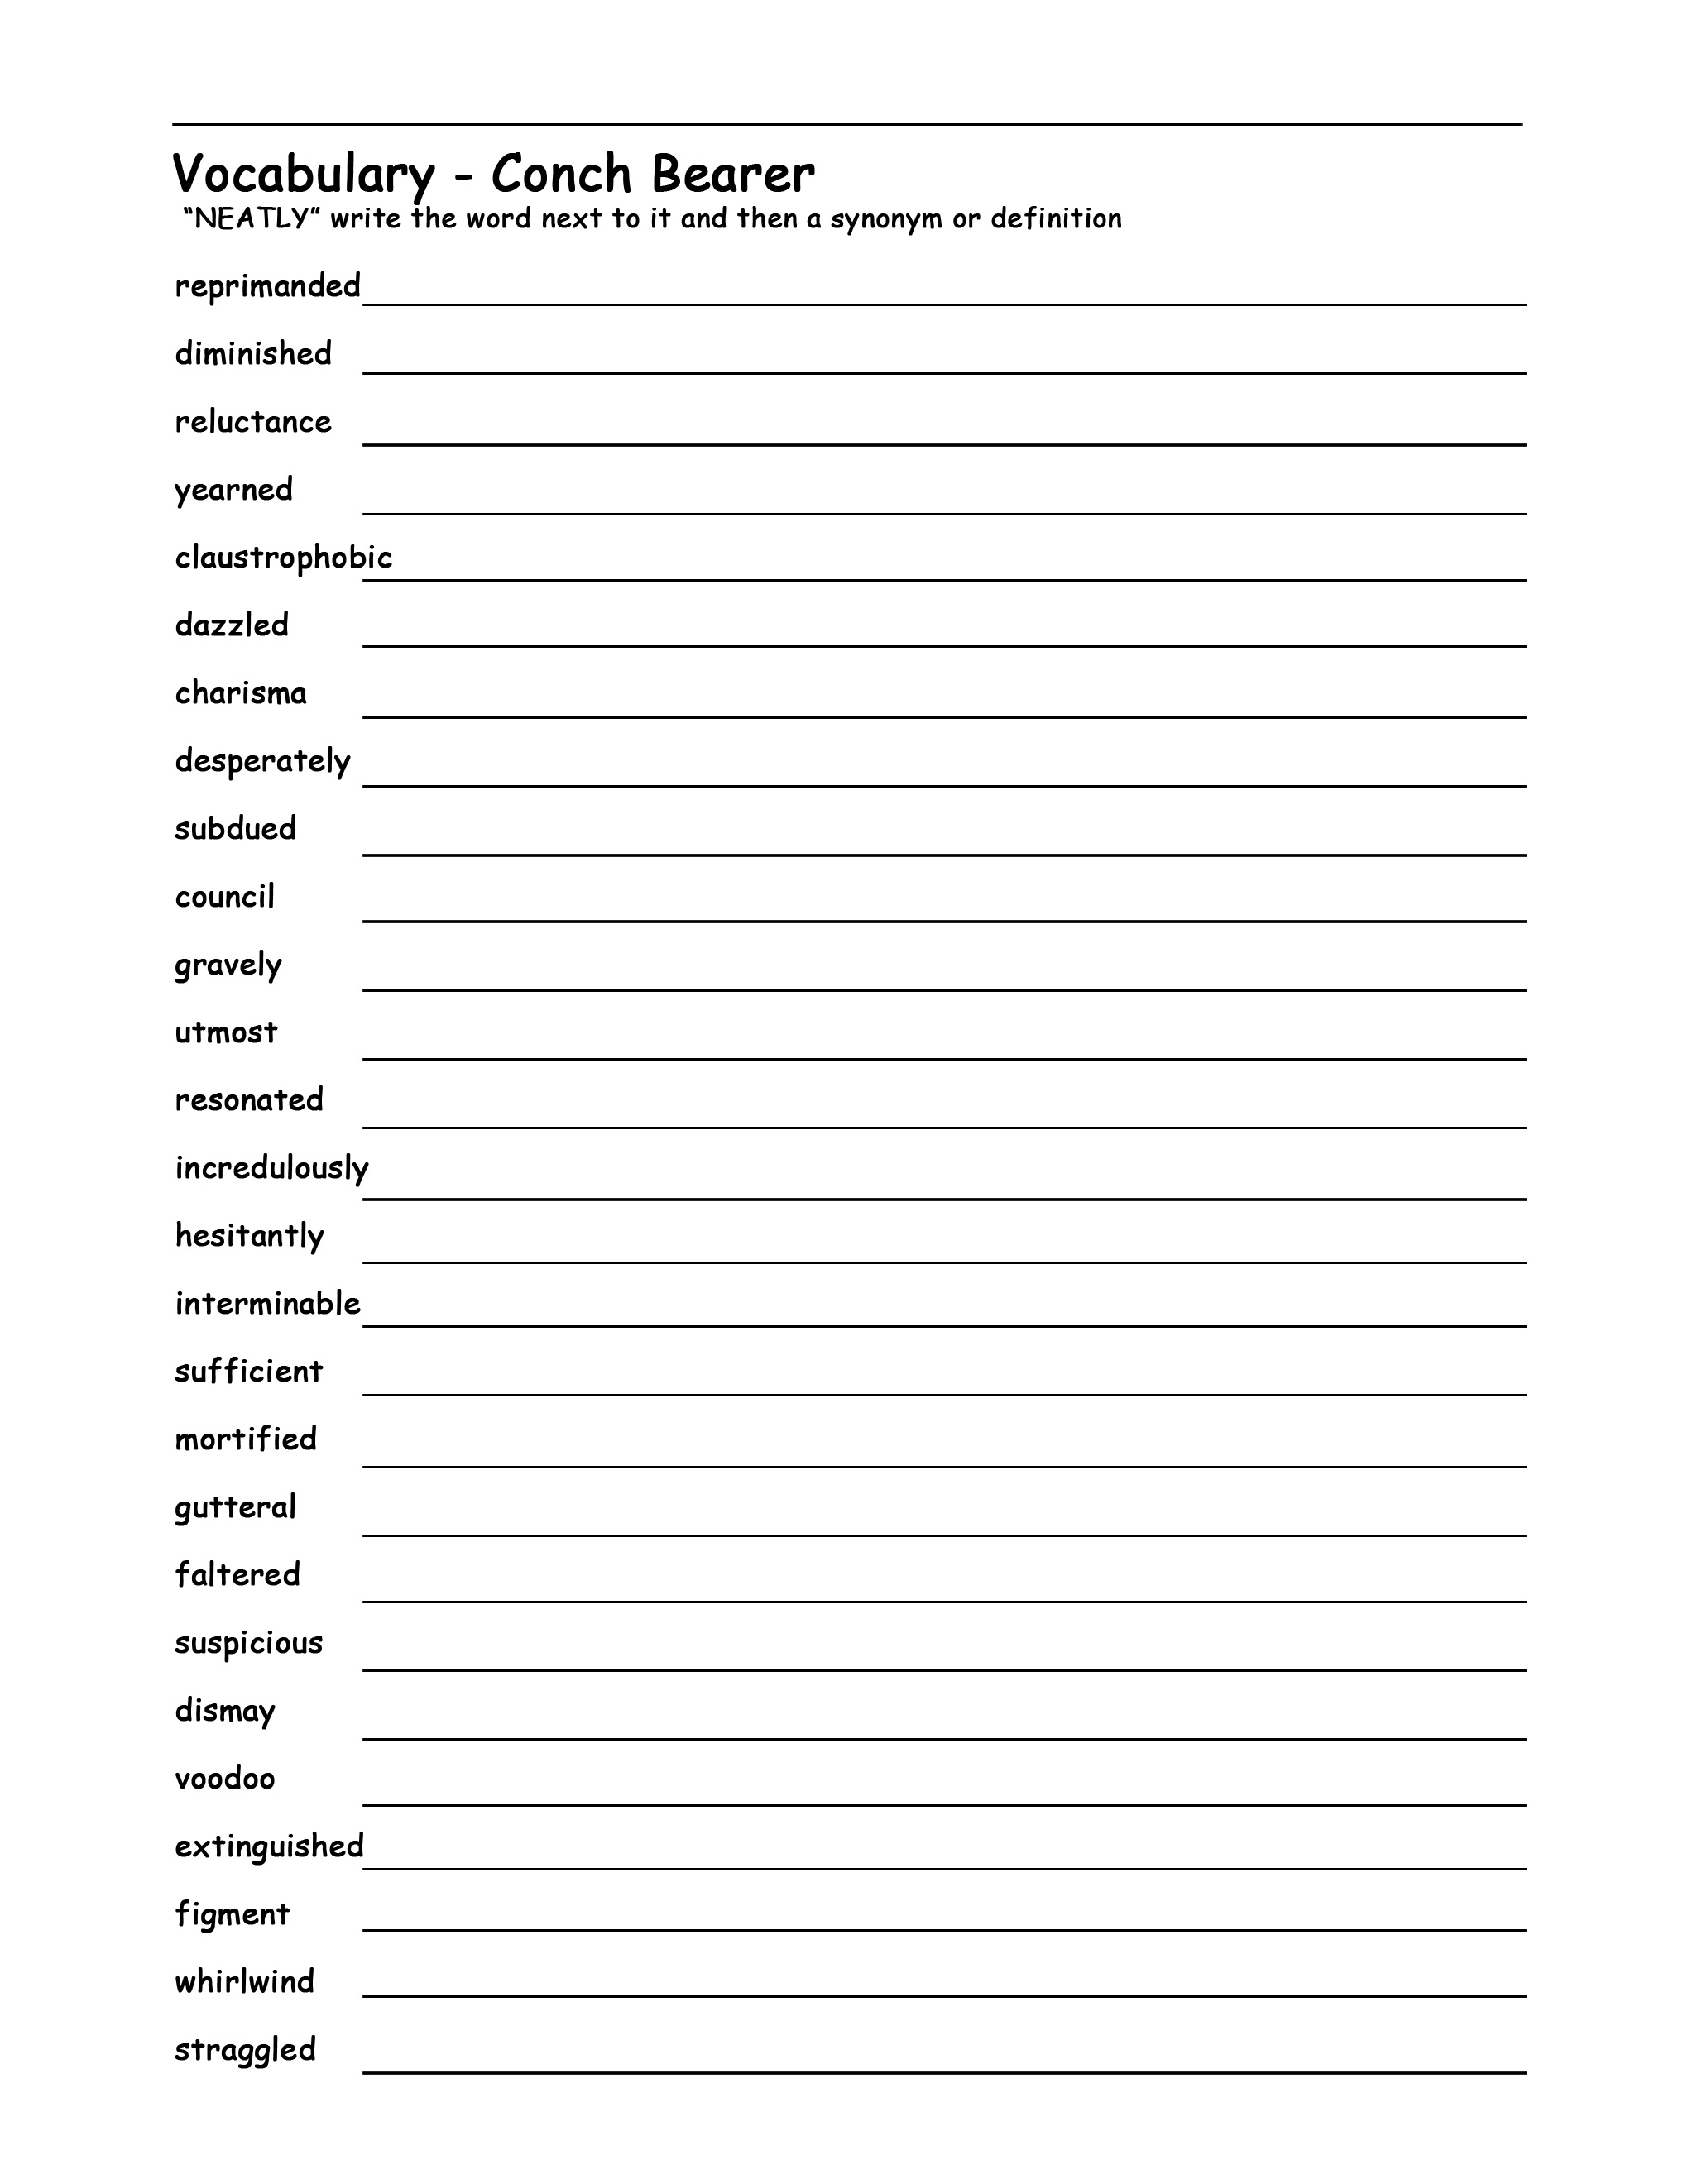 Reading Vocabulary Worksheets Image